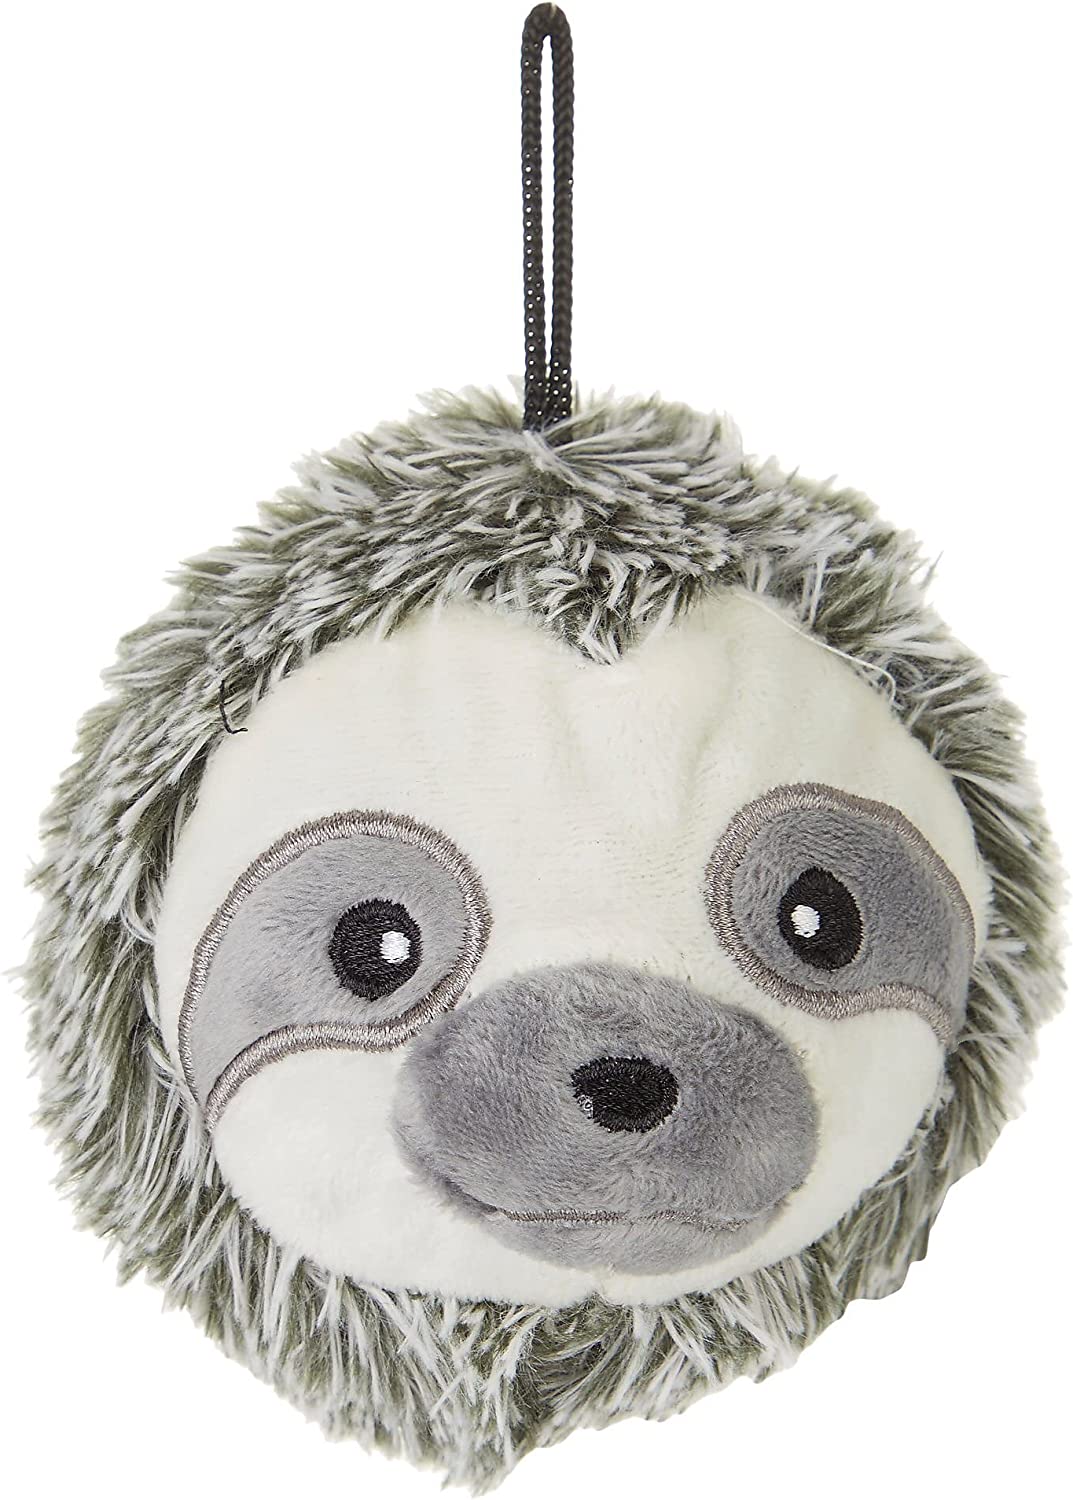 Plush Dog Toys Interactive Dog Puzzle Toys Cute Sloth Teething